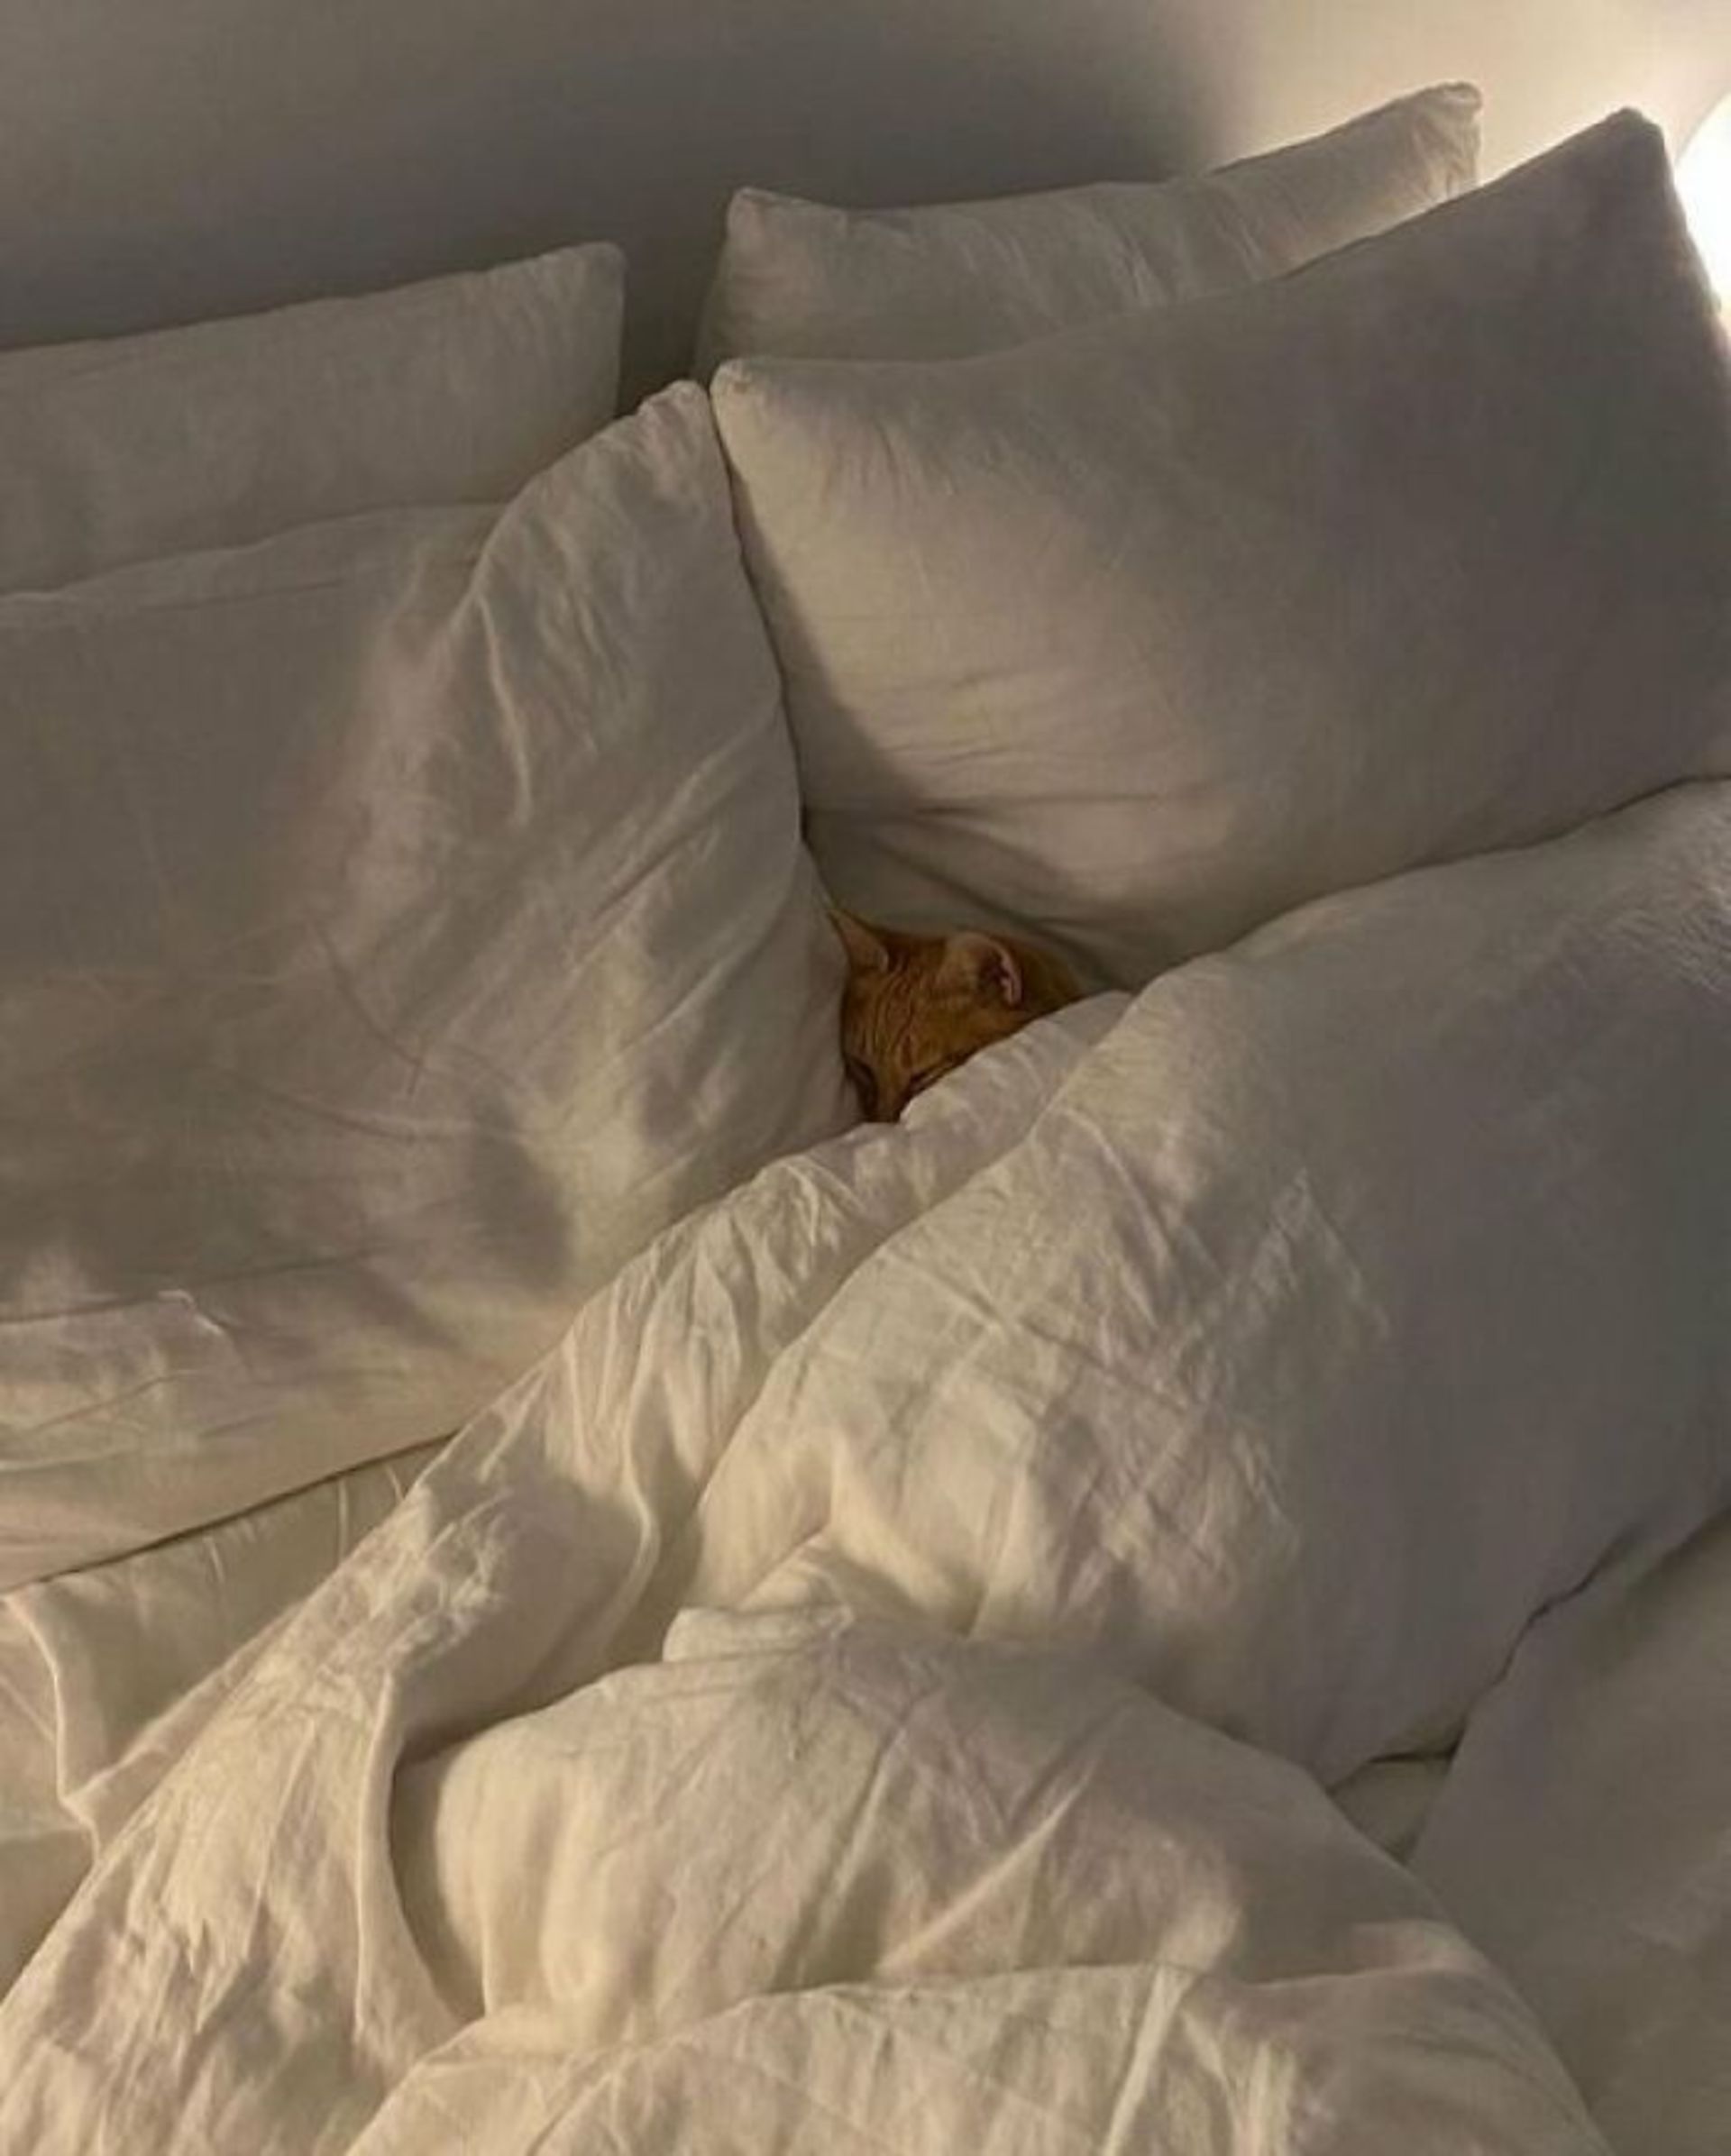 گربه خوابیده بین ملحفه های سفید تخت